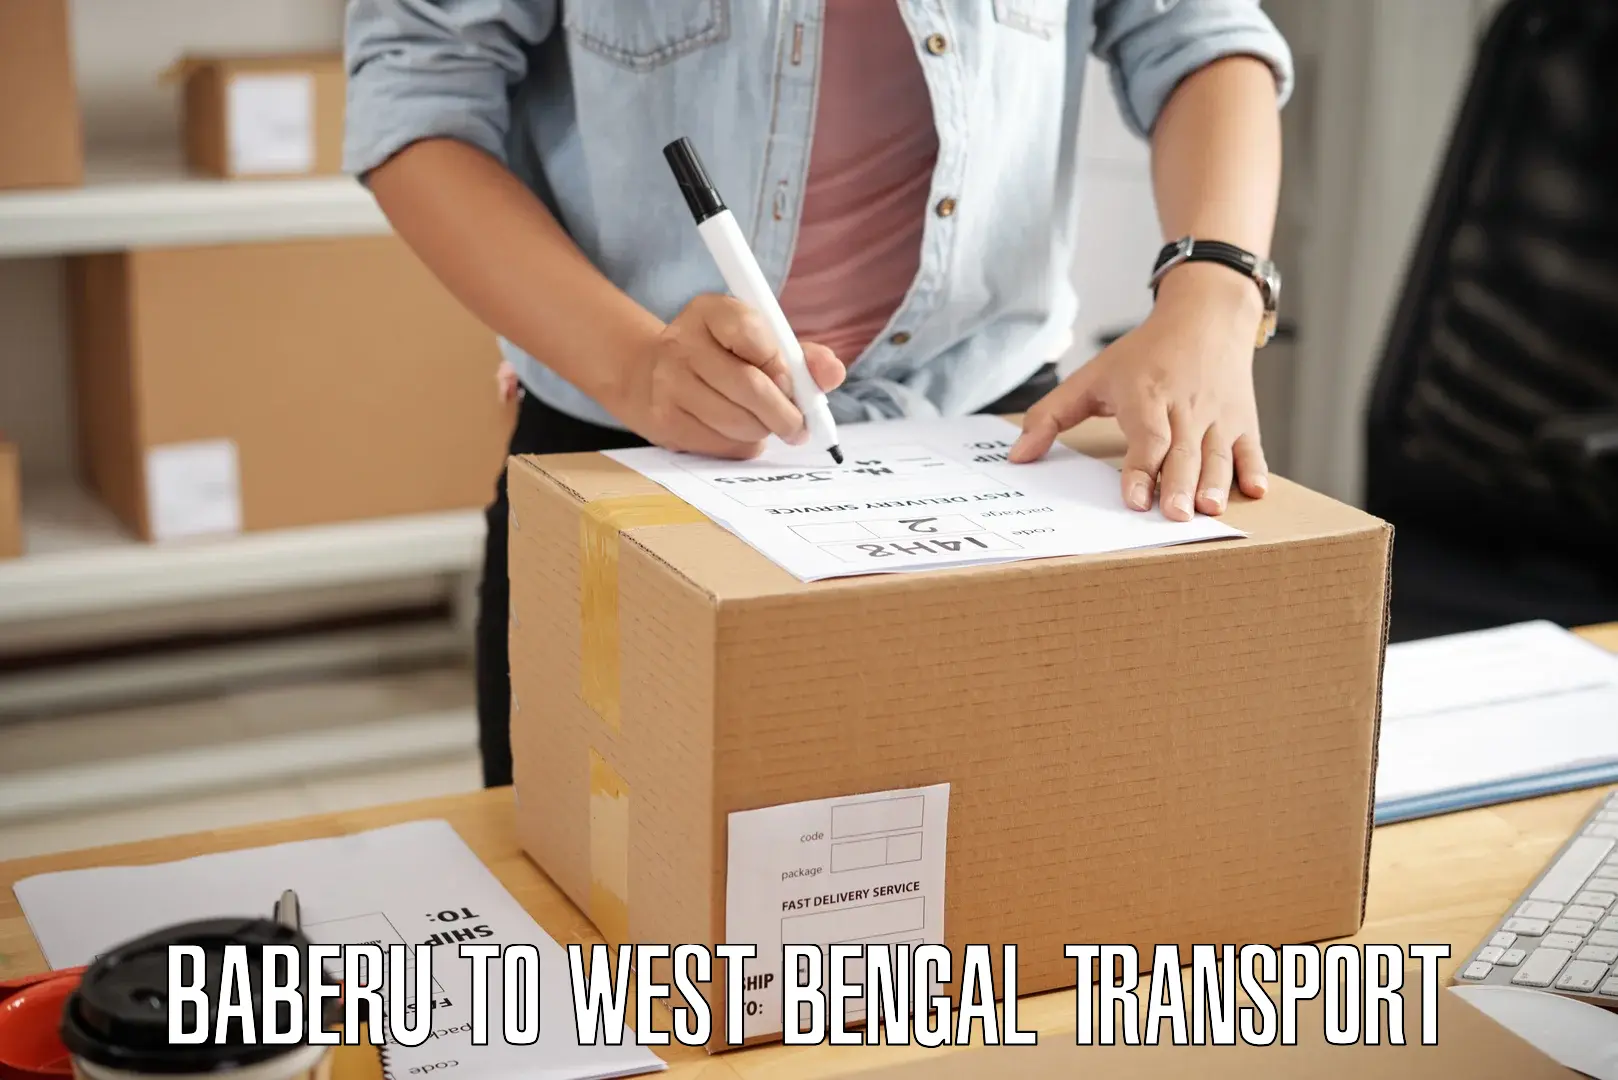 Nearest transport service Baberu to Darjeeling